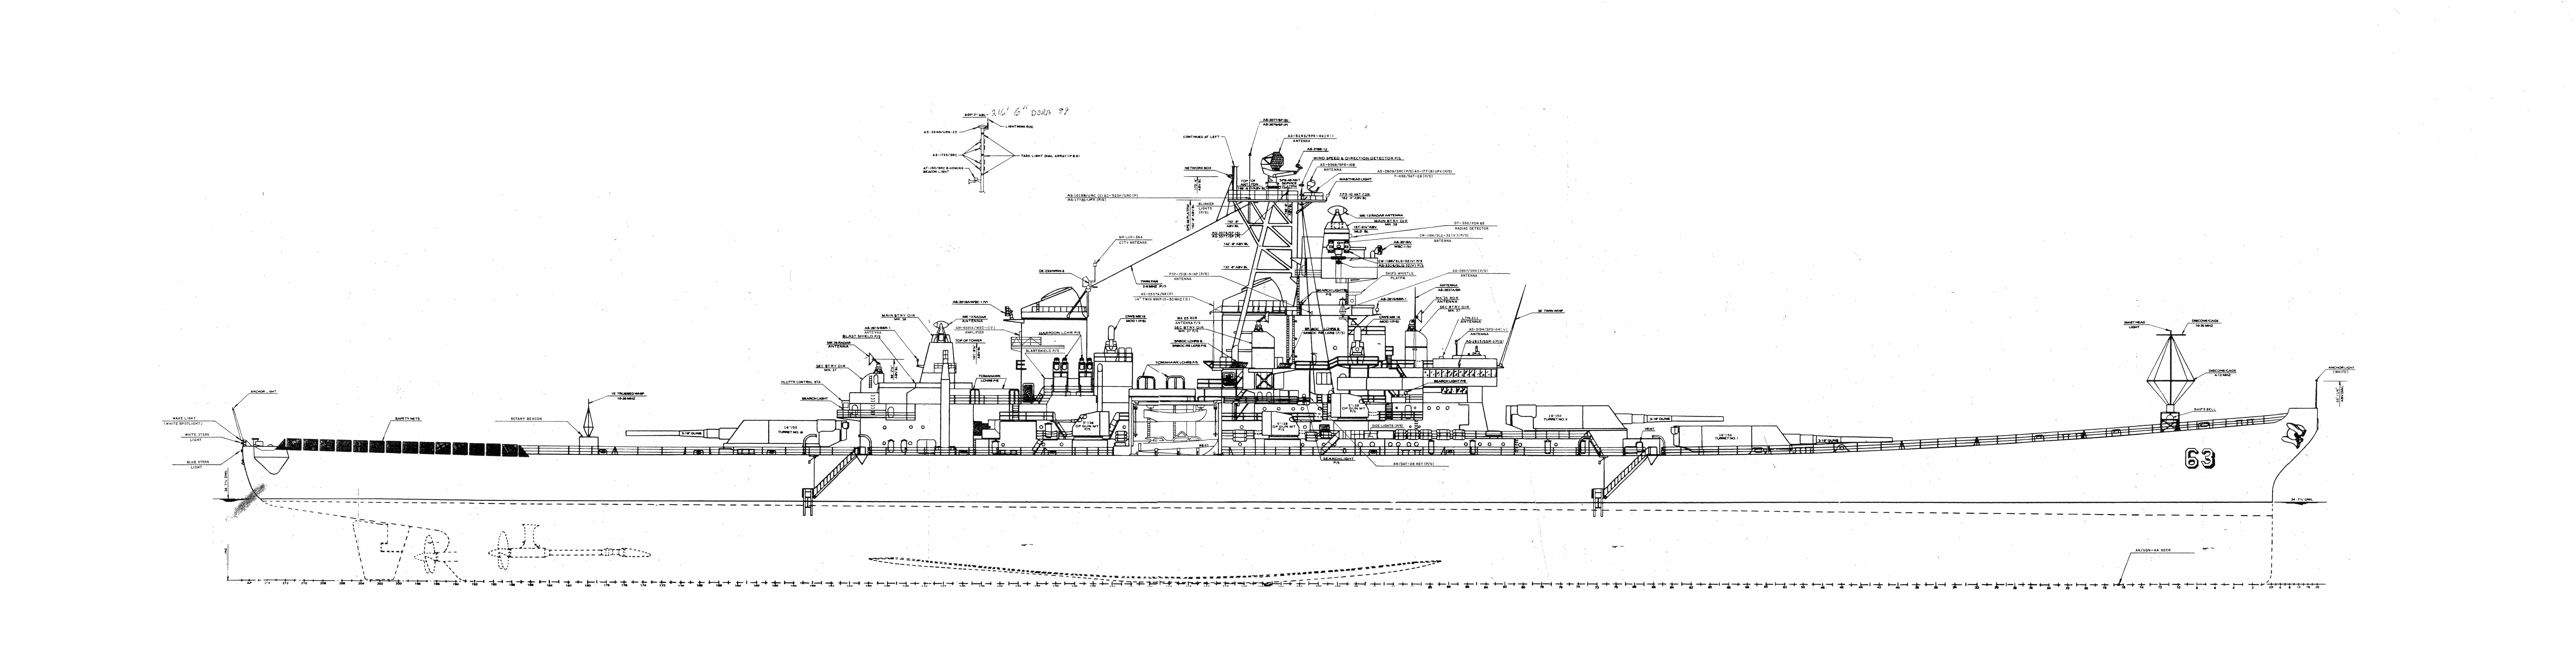 オアフ島パールハーバー 真珠湾 に係留されている戦艦ミズーリ記念館 戦艦ミズーリの設計図